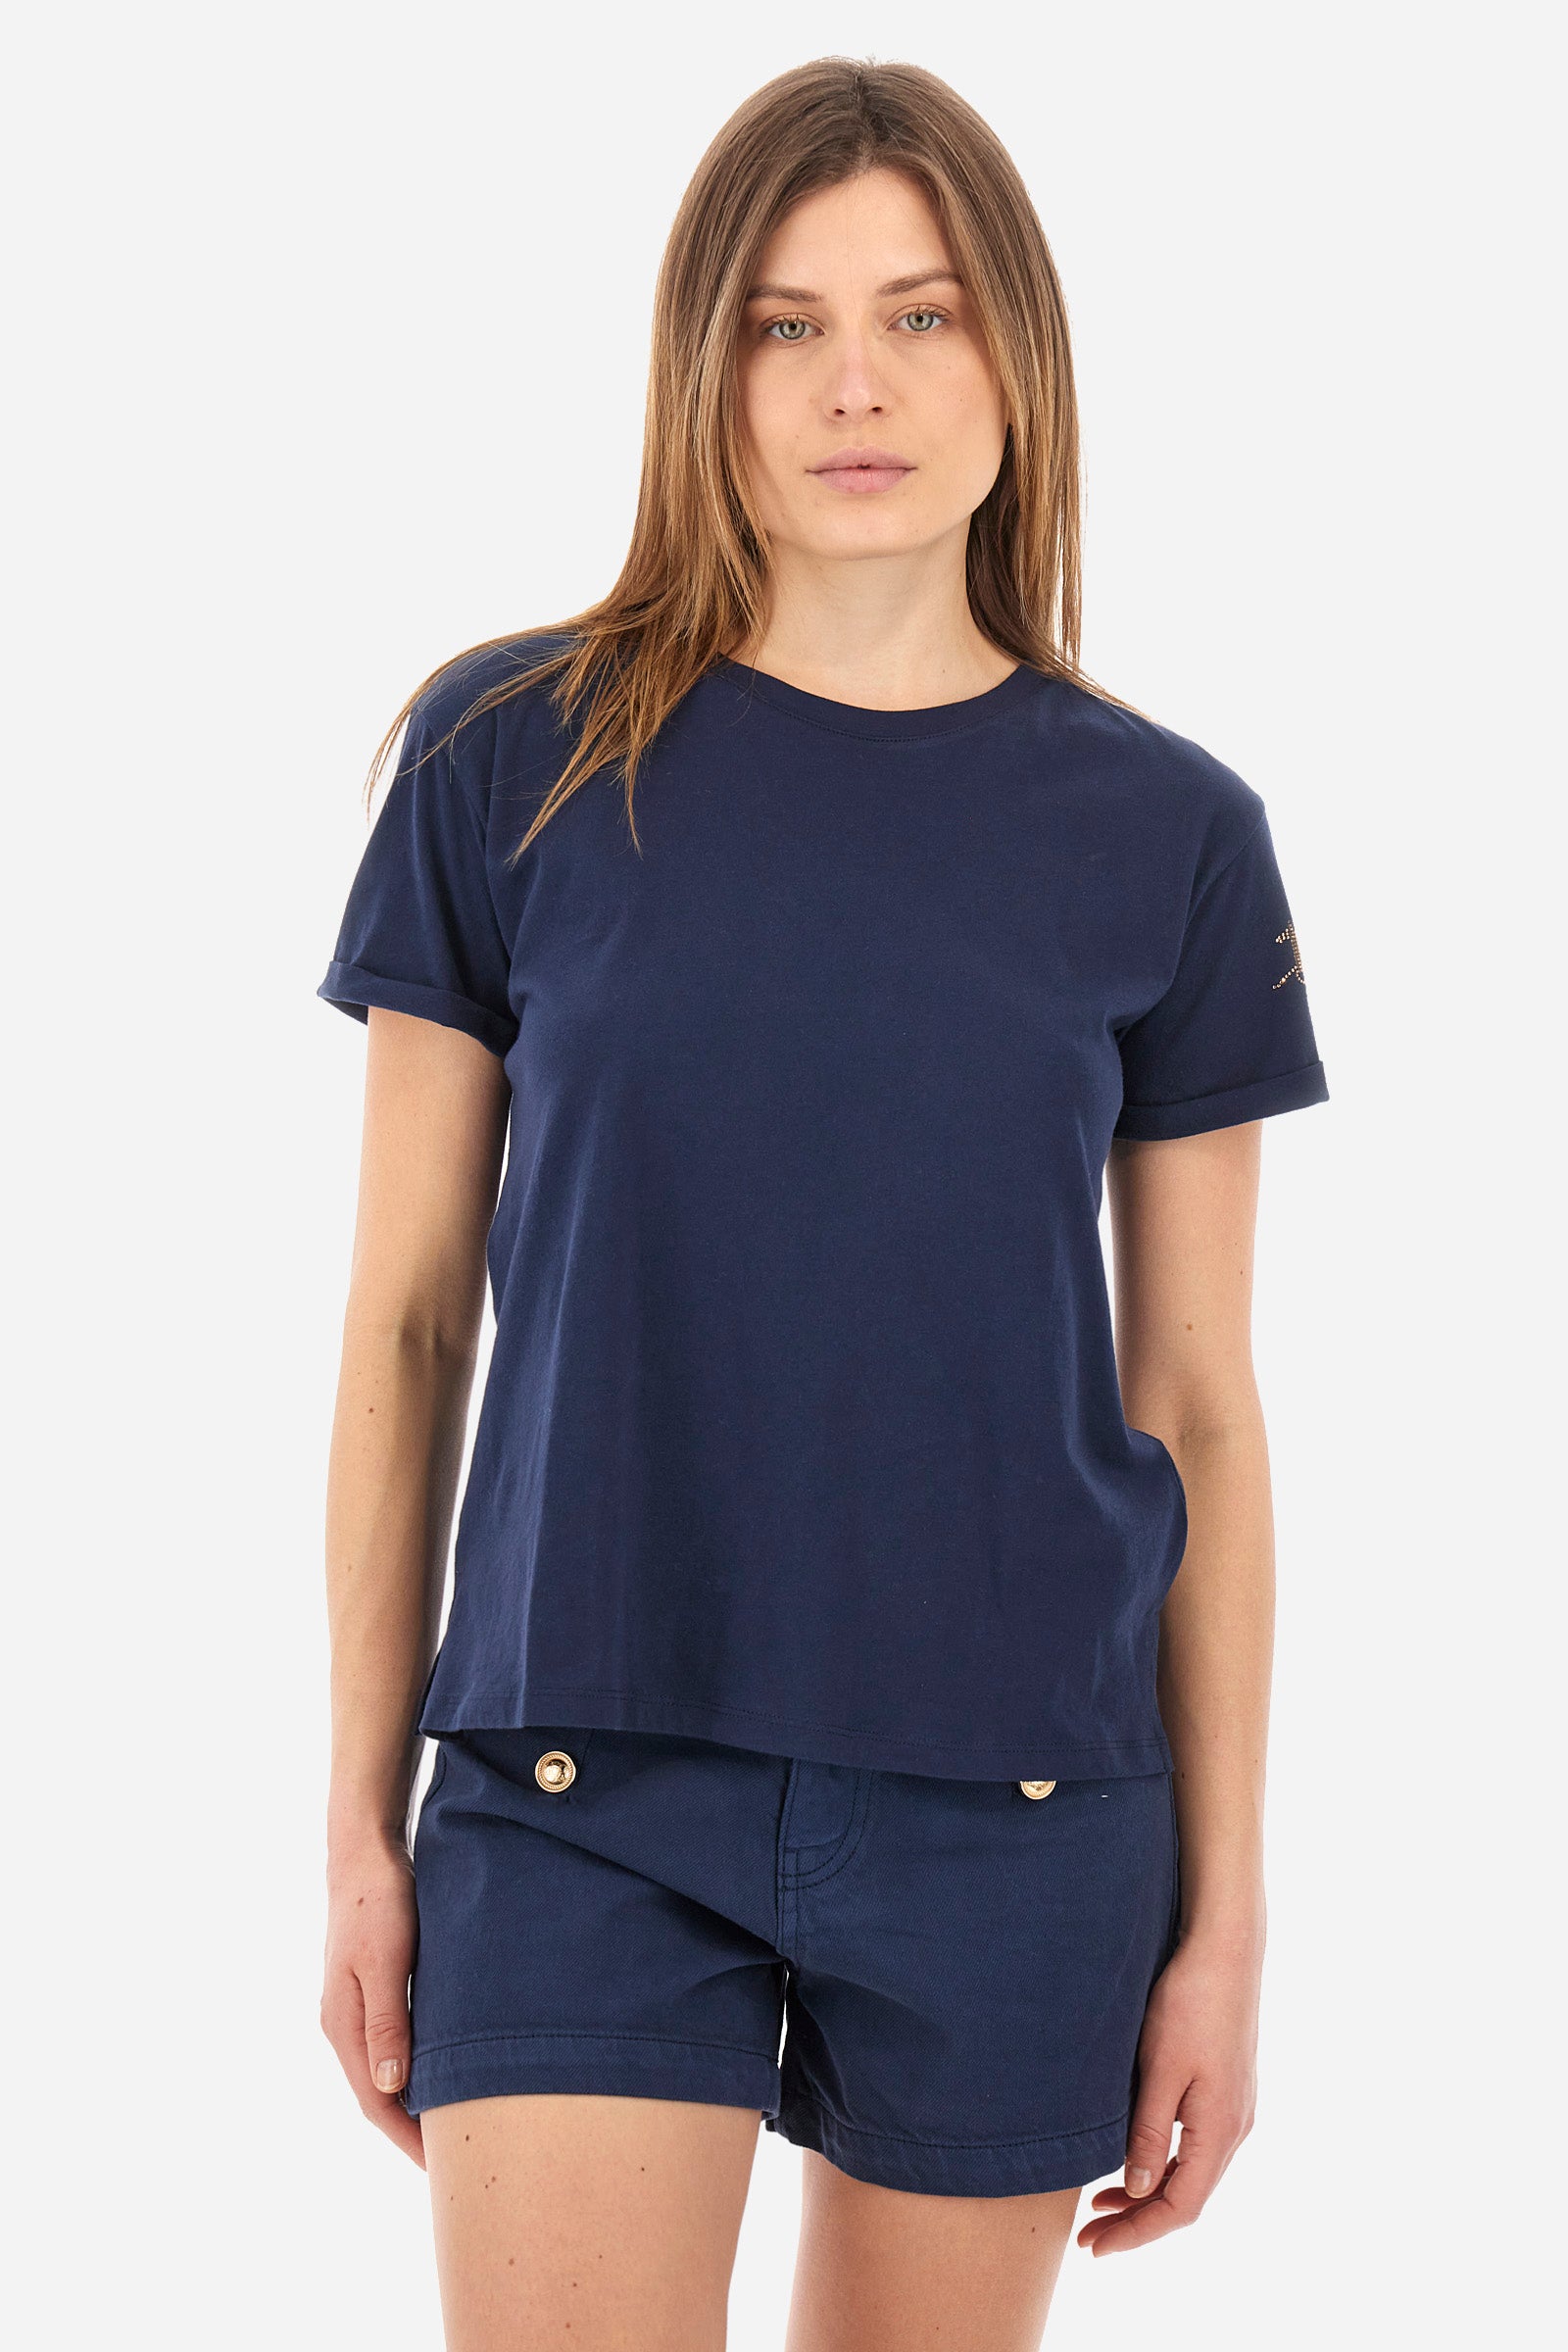 Damen-T-Shirt Regular Fit - Alba